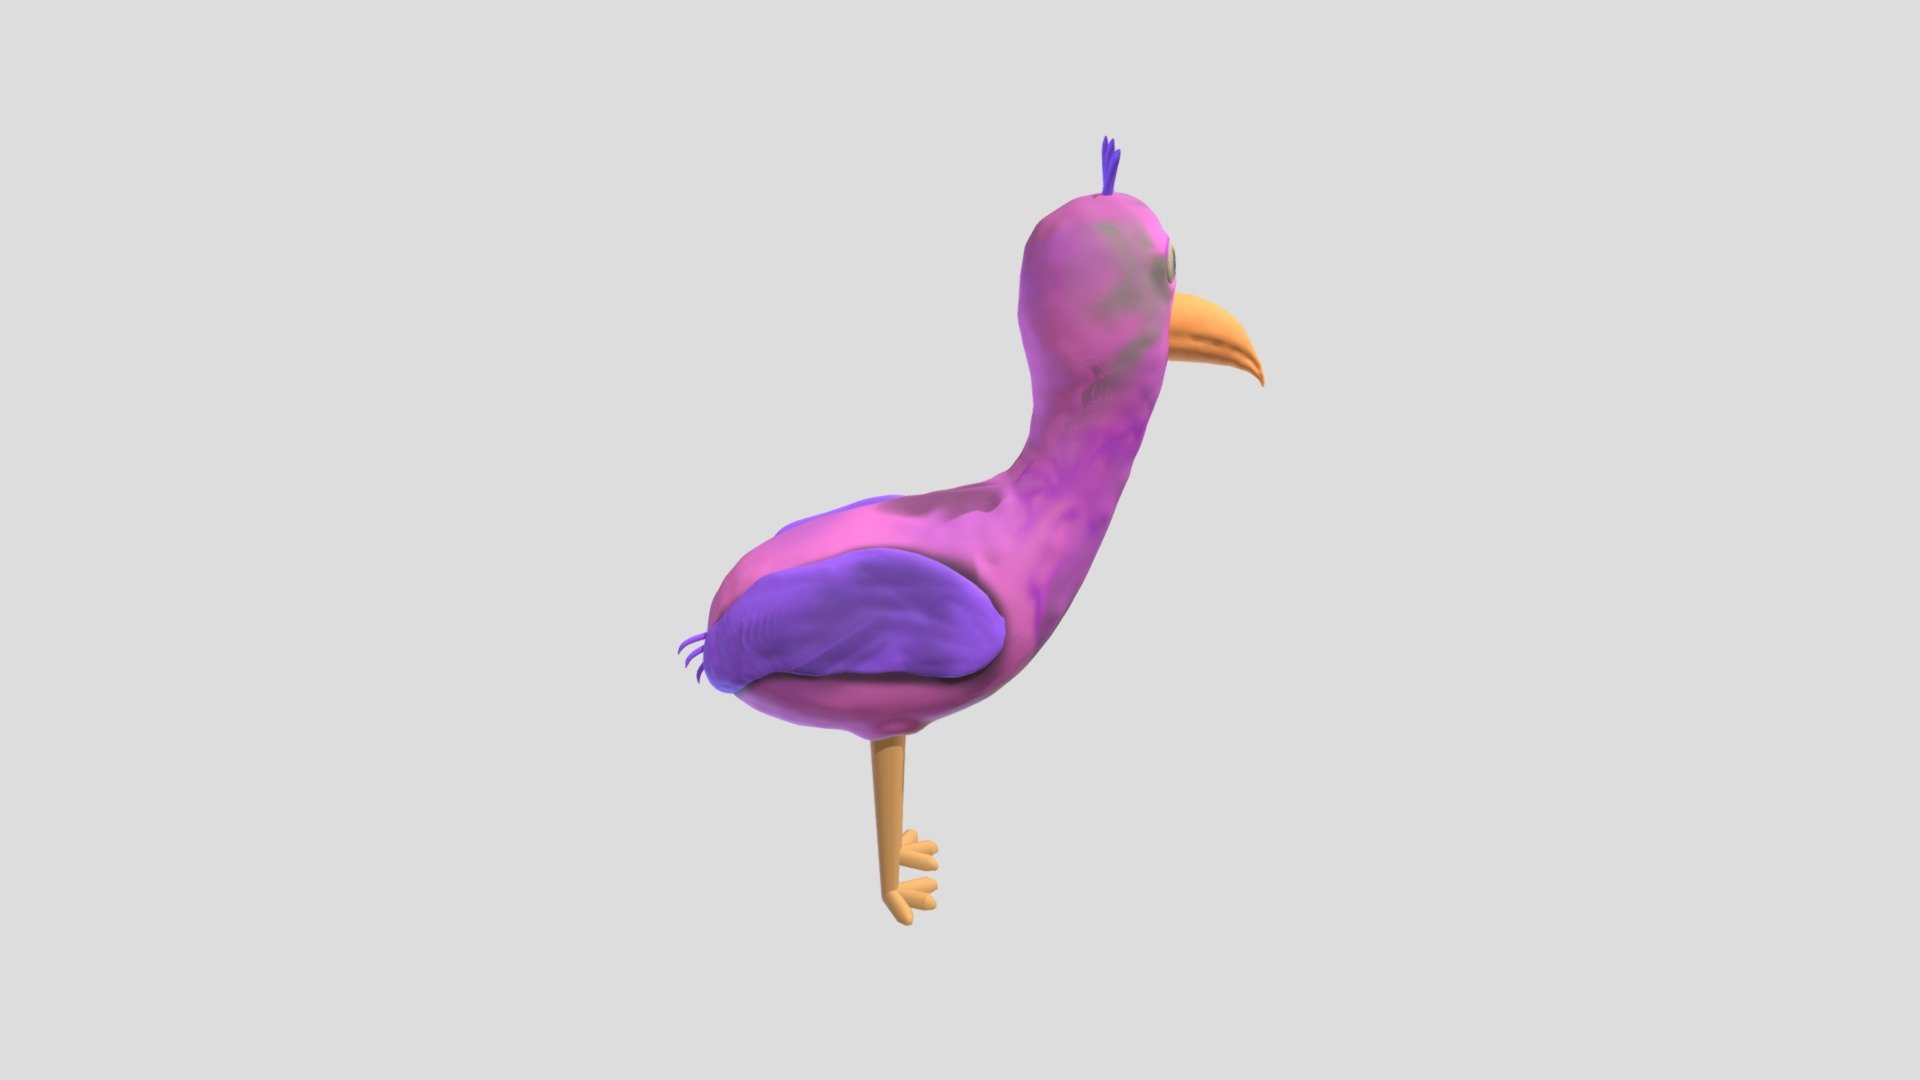 OPILA BIRD FROM GARTEN OF BANBAN FAN ART, BGGT, 3D models download